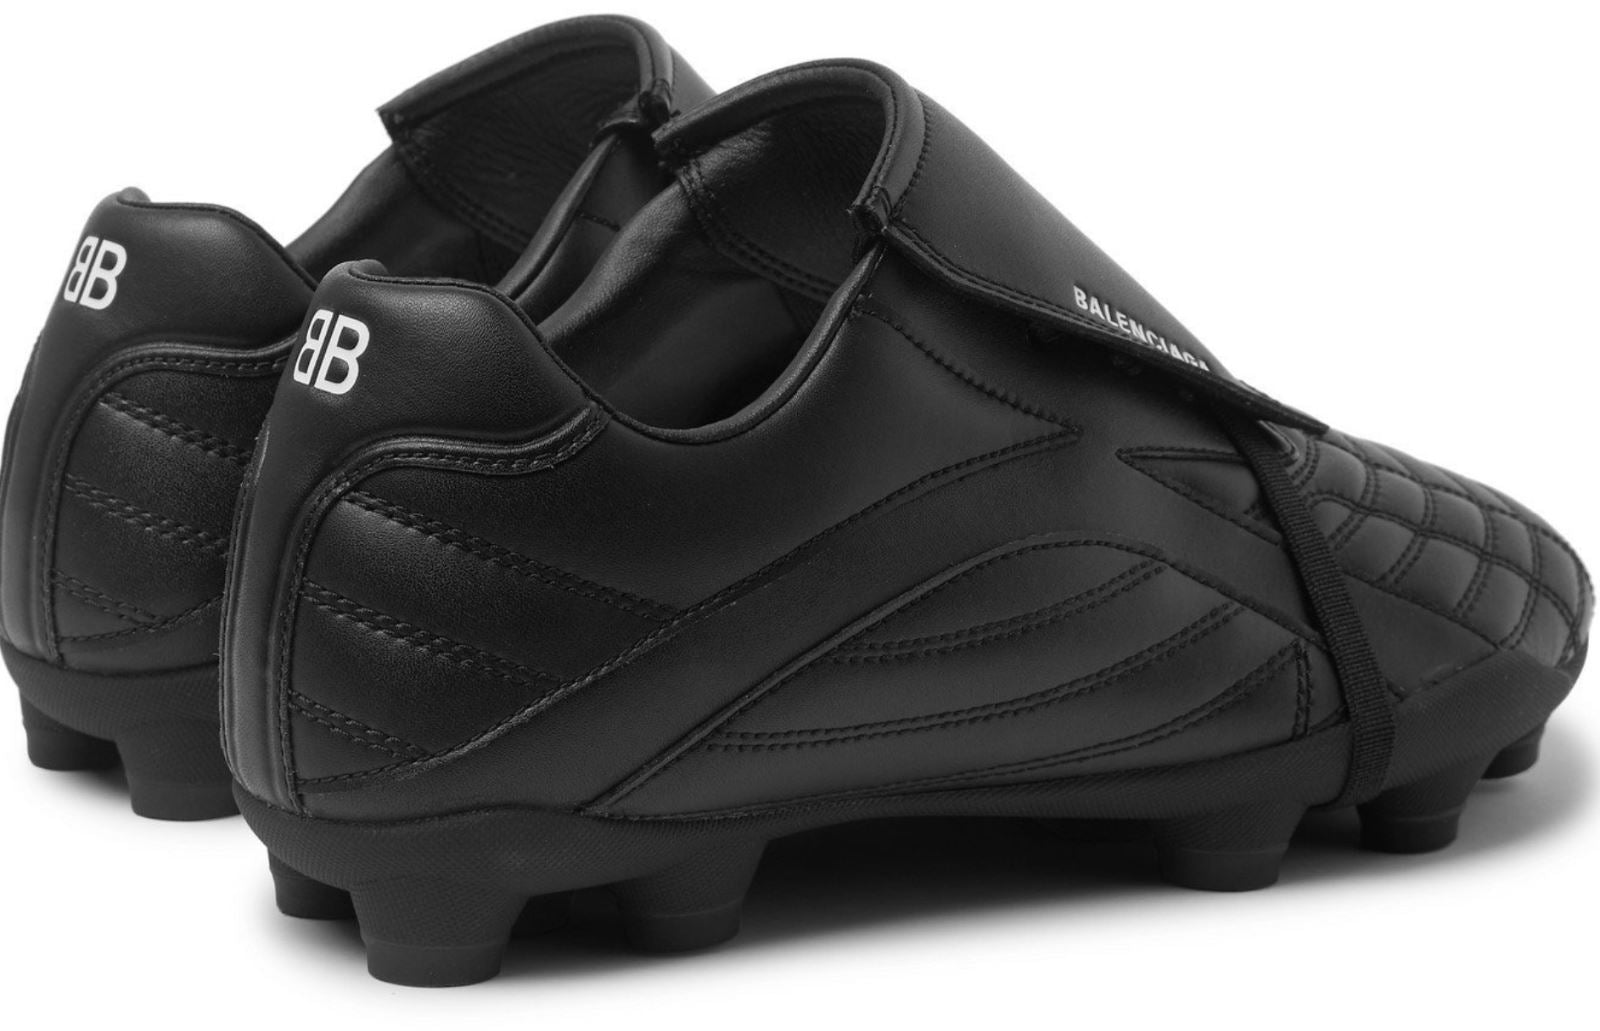 NIB 725 долларов США Balenciaga Женские кожаные кроссовки Socker Black 6 США (36 евро) 